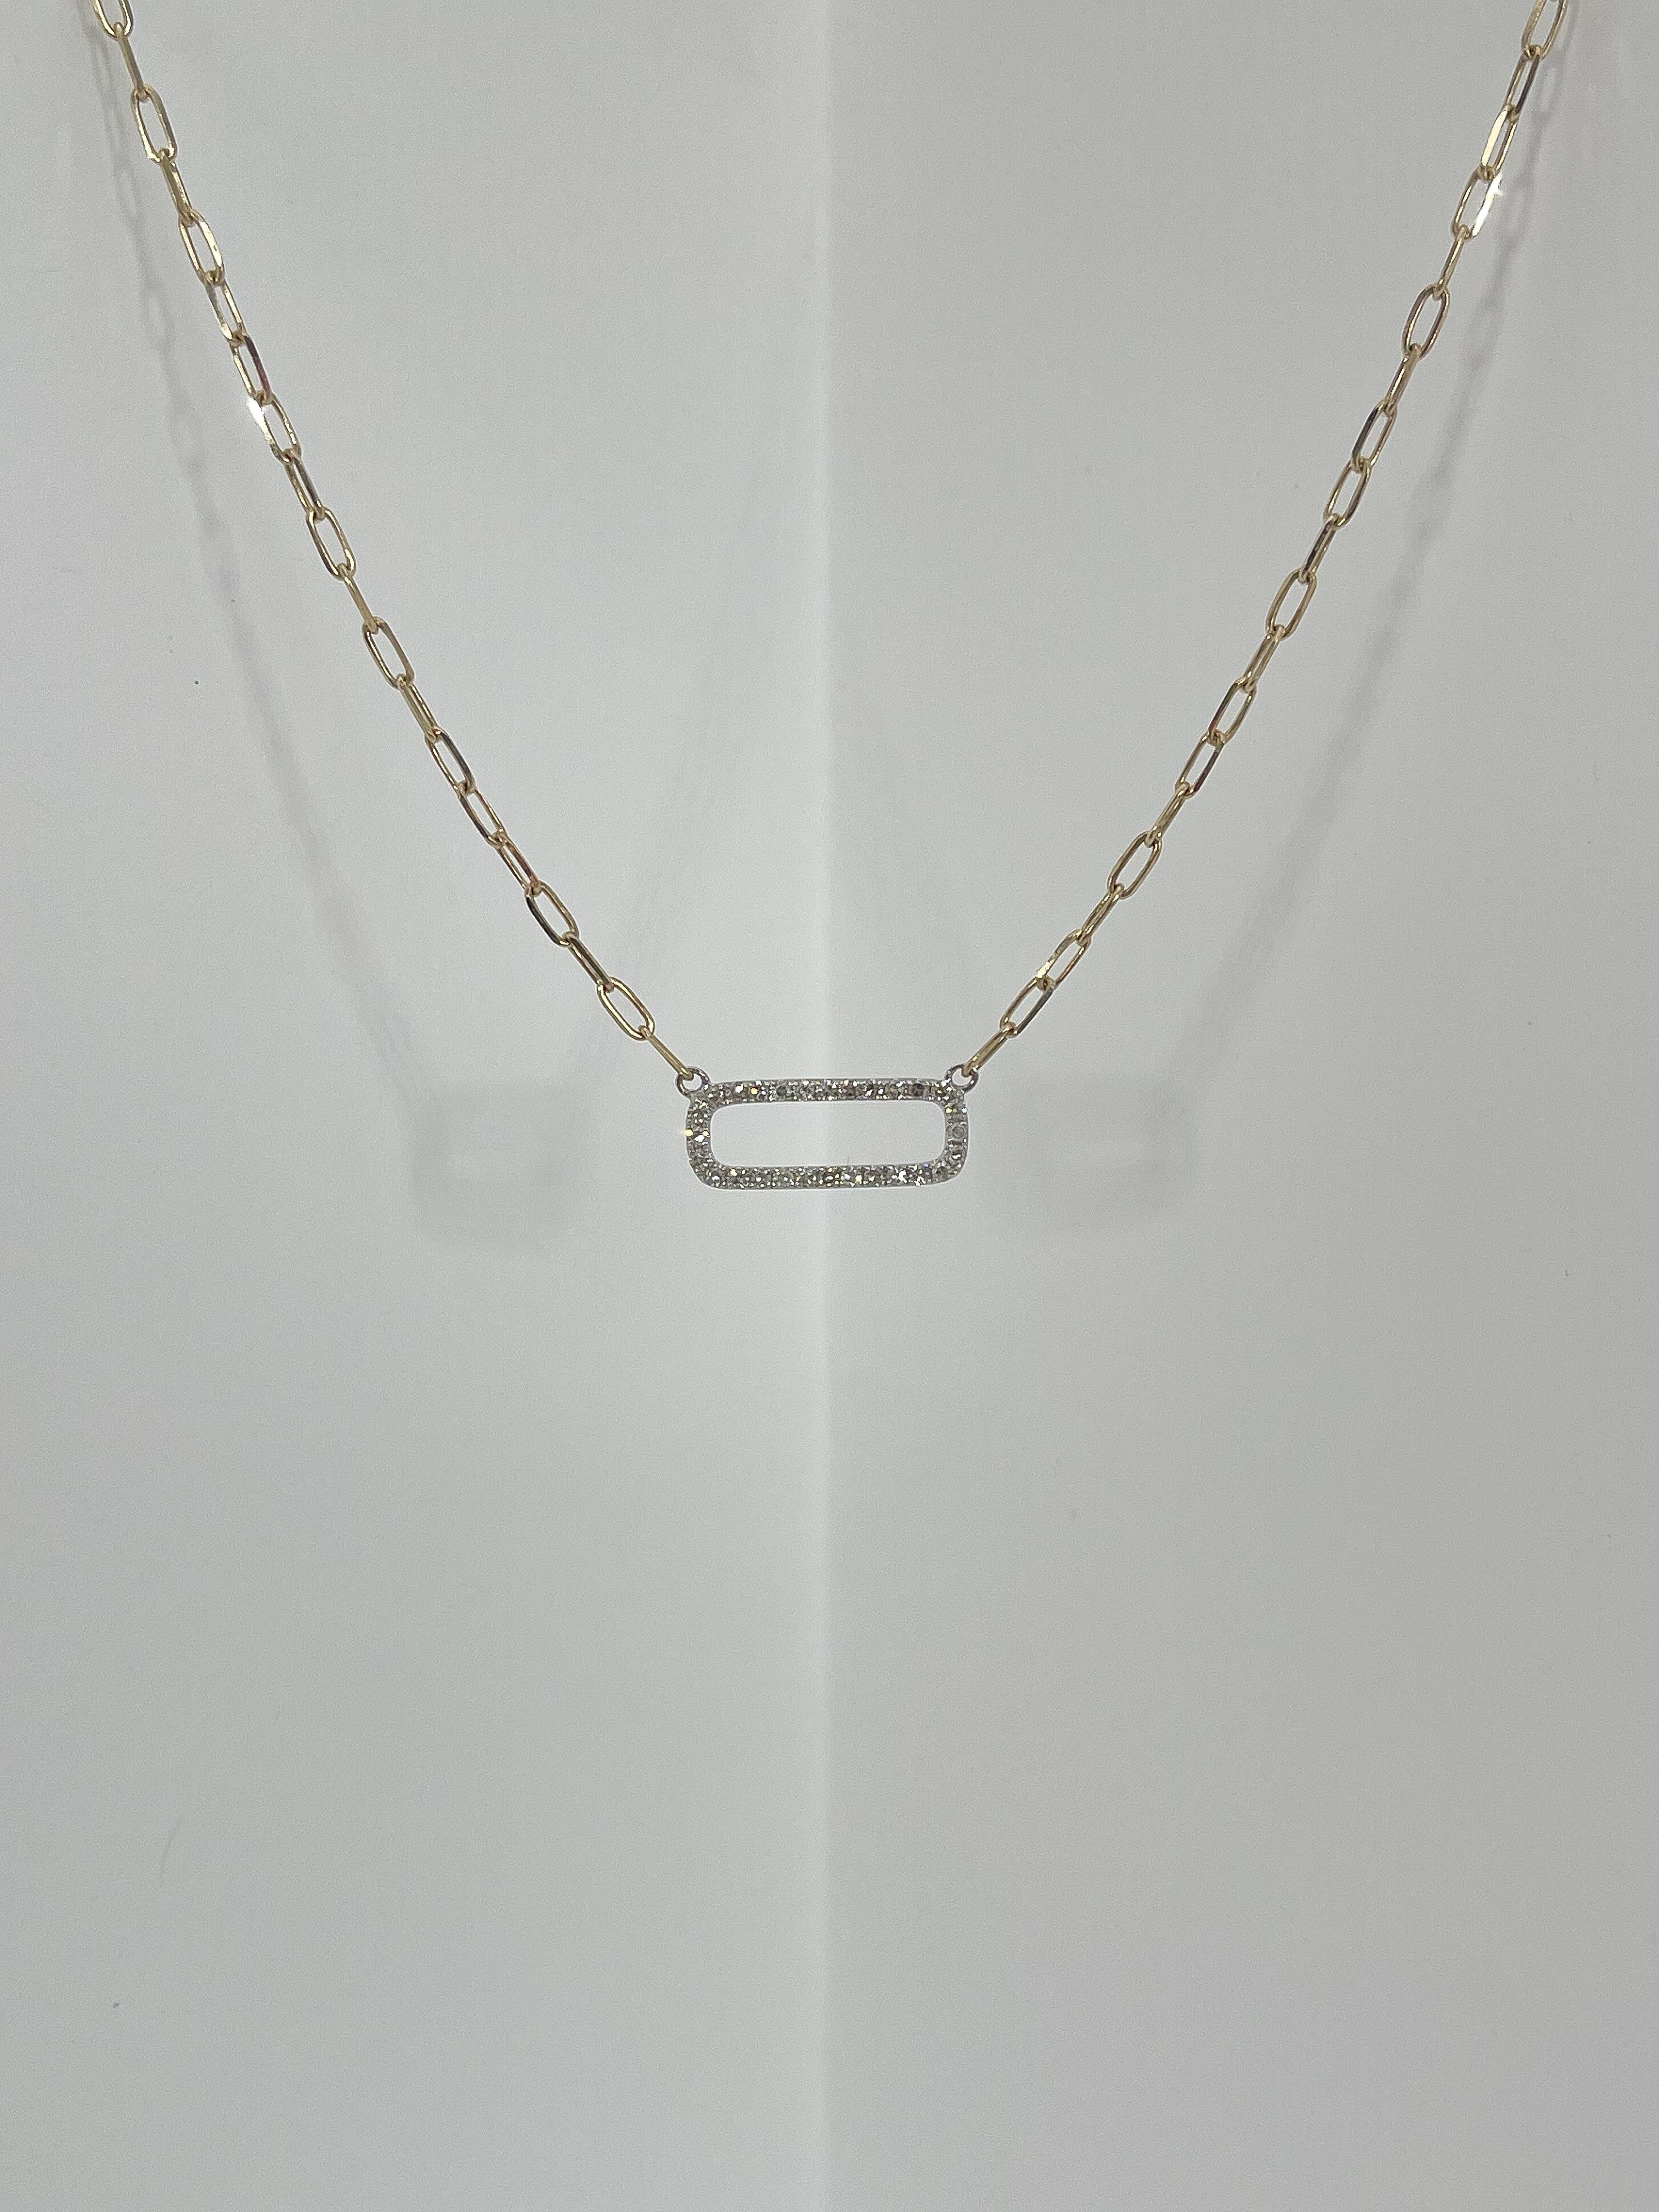 Collier carré ouvert en 14k avec deux tons de diamants .21 CTW. Les diamants de ce collier sont de forme ronde, la chaîne est une chaîne en forme de trombone et mesure 18 pouces de long. Le carré mesure 5,5 mm x 16 mm, possède un fermoir en forme de